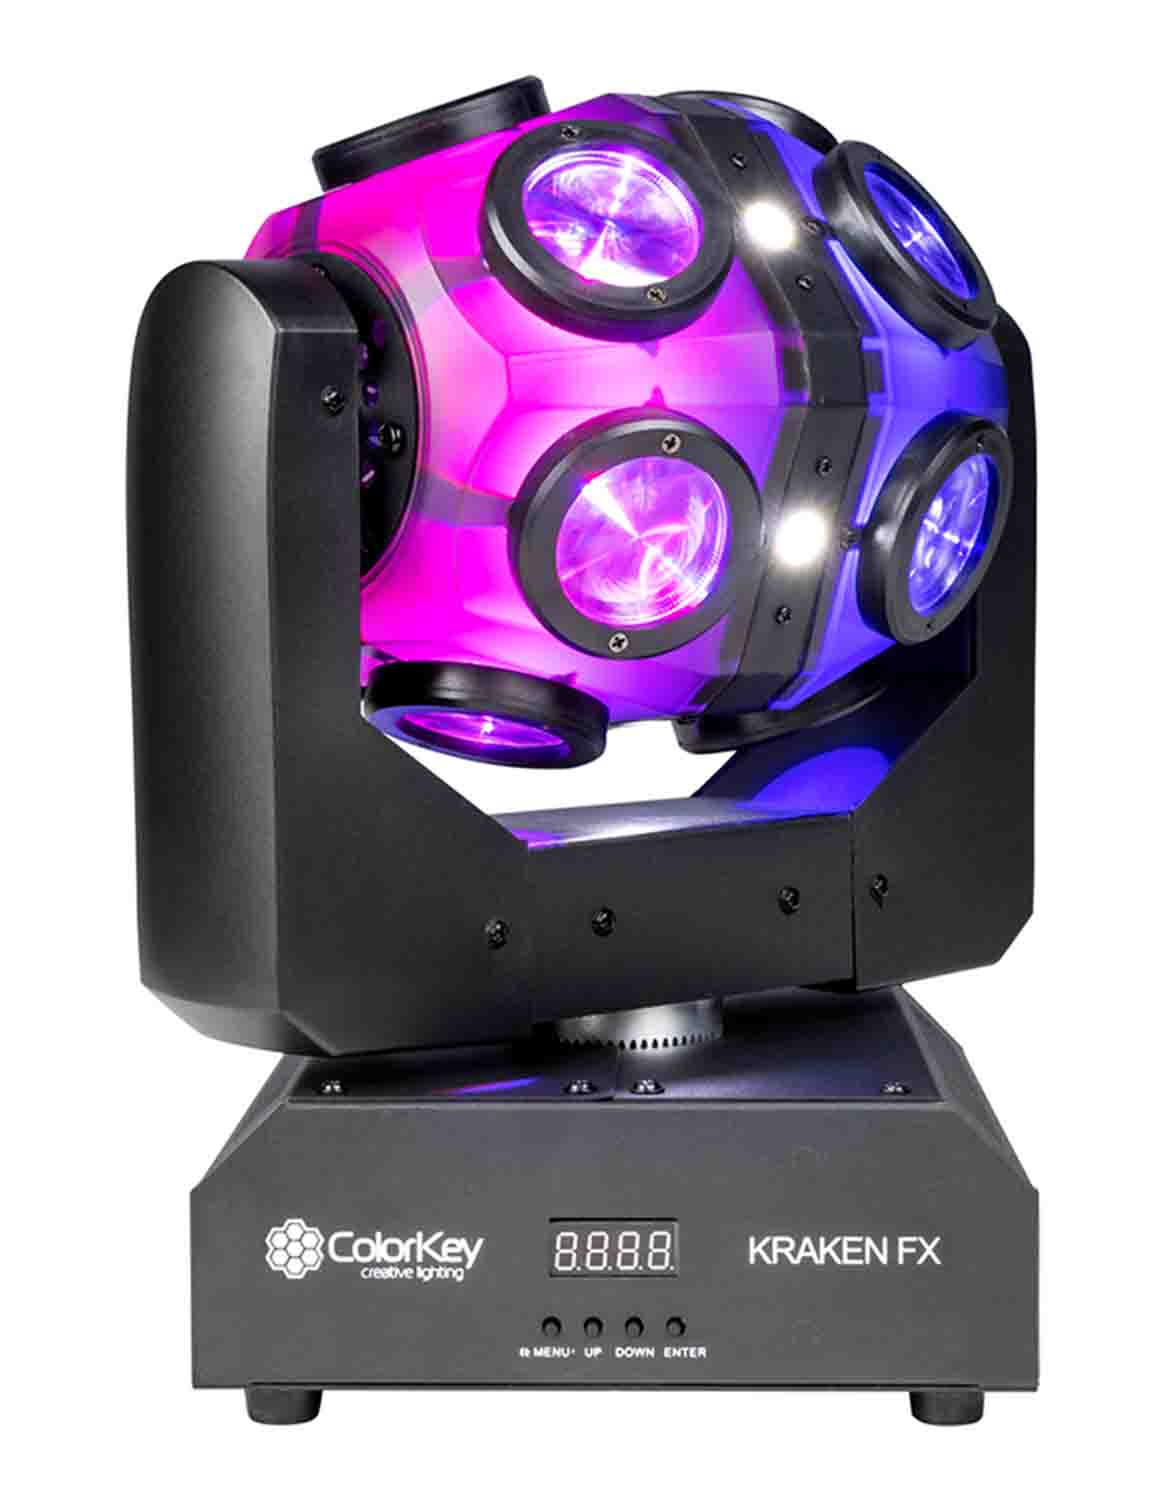 Colorkey CKU-1070 Kraken FX Energizing QUAD Color LED Effect Light with Built in Blinder - Hollywood DJ